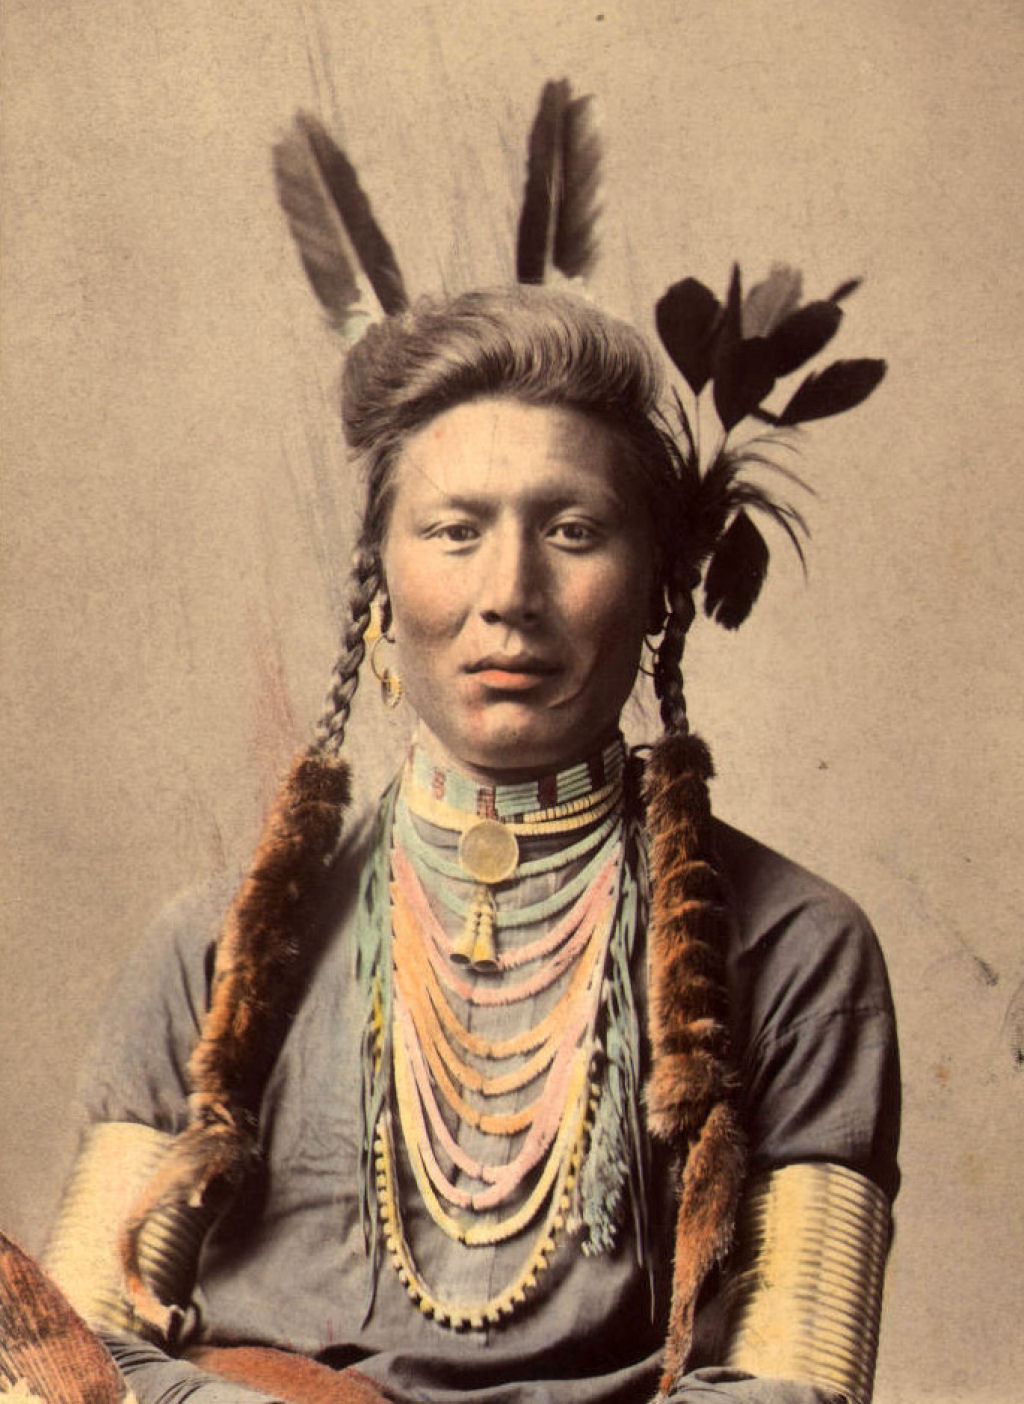 Impressionantes fotos históricas coloridas de nativos americanos do final do século 19 e início do século 20 28